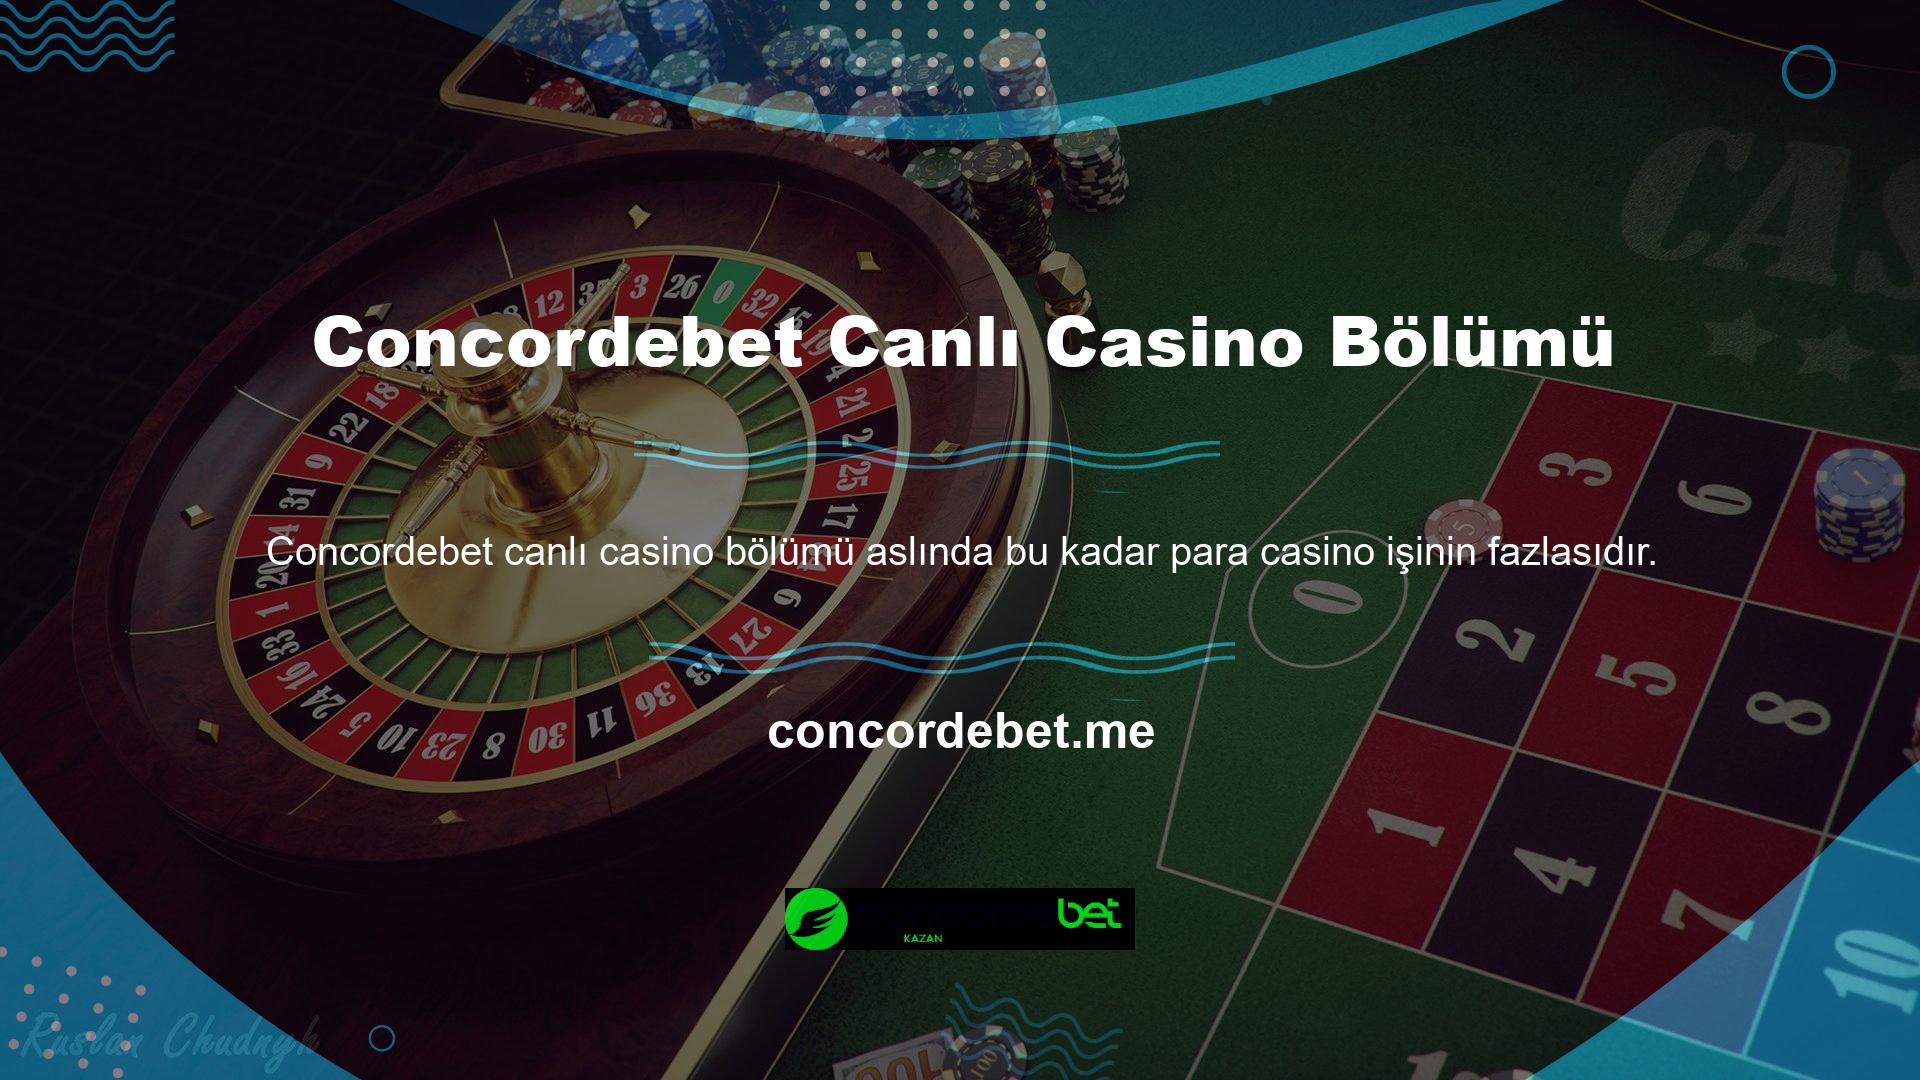 Sorun şu ki, birçok casino şirketi bonusu aslında özellikle casino meraklıları için tasarlanmıştır